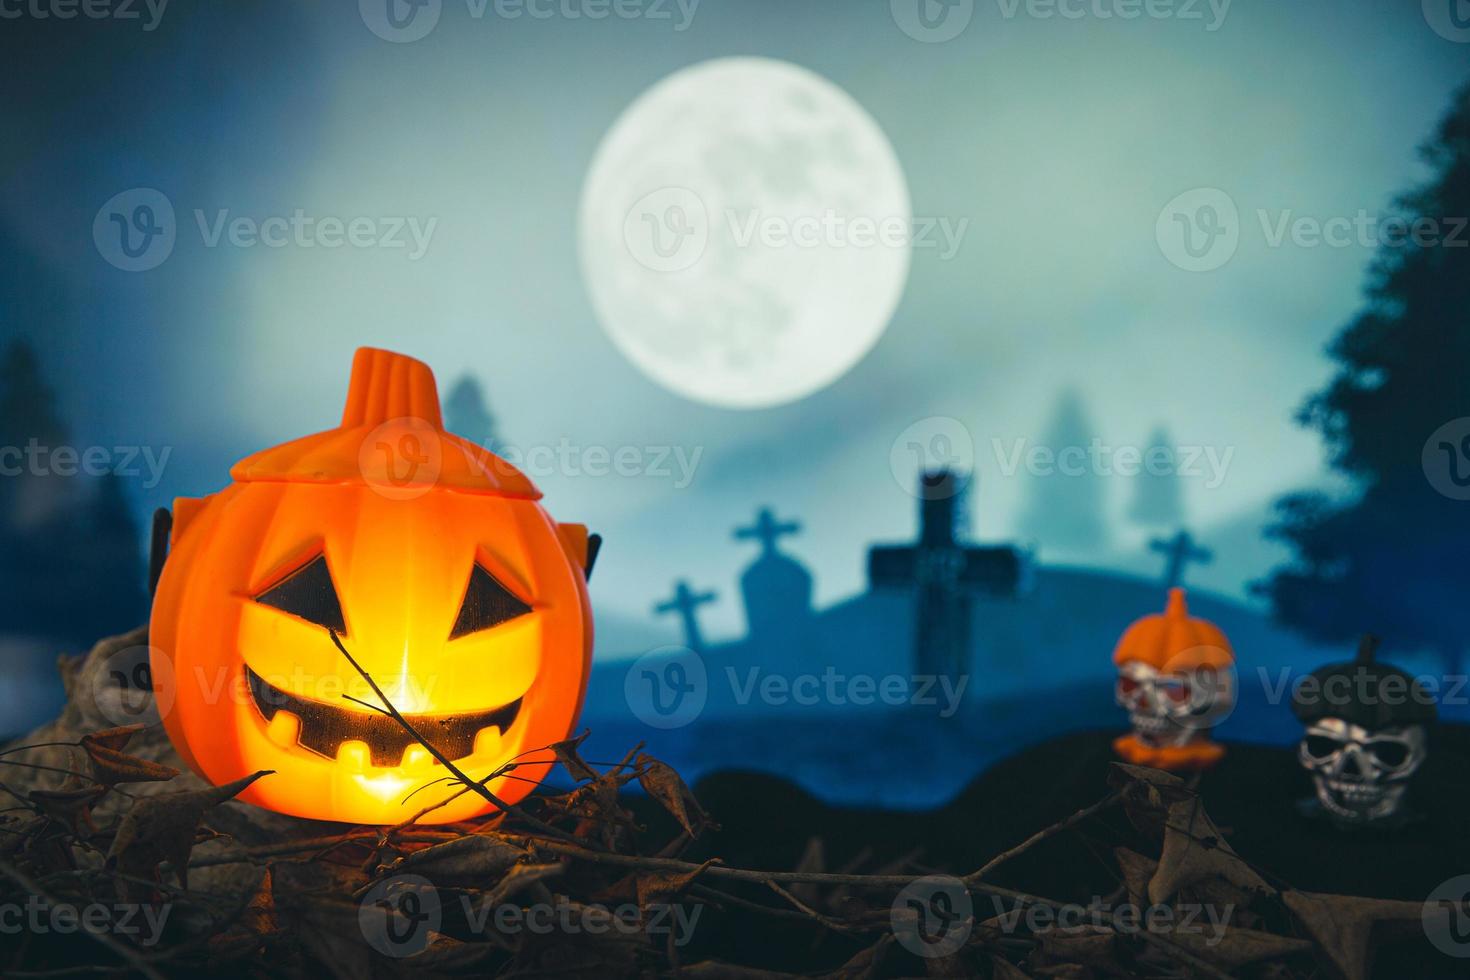 gruseliger friedhof mit glühendem halloween-kürbis foto